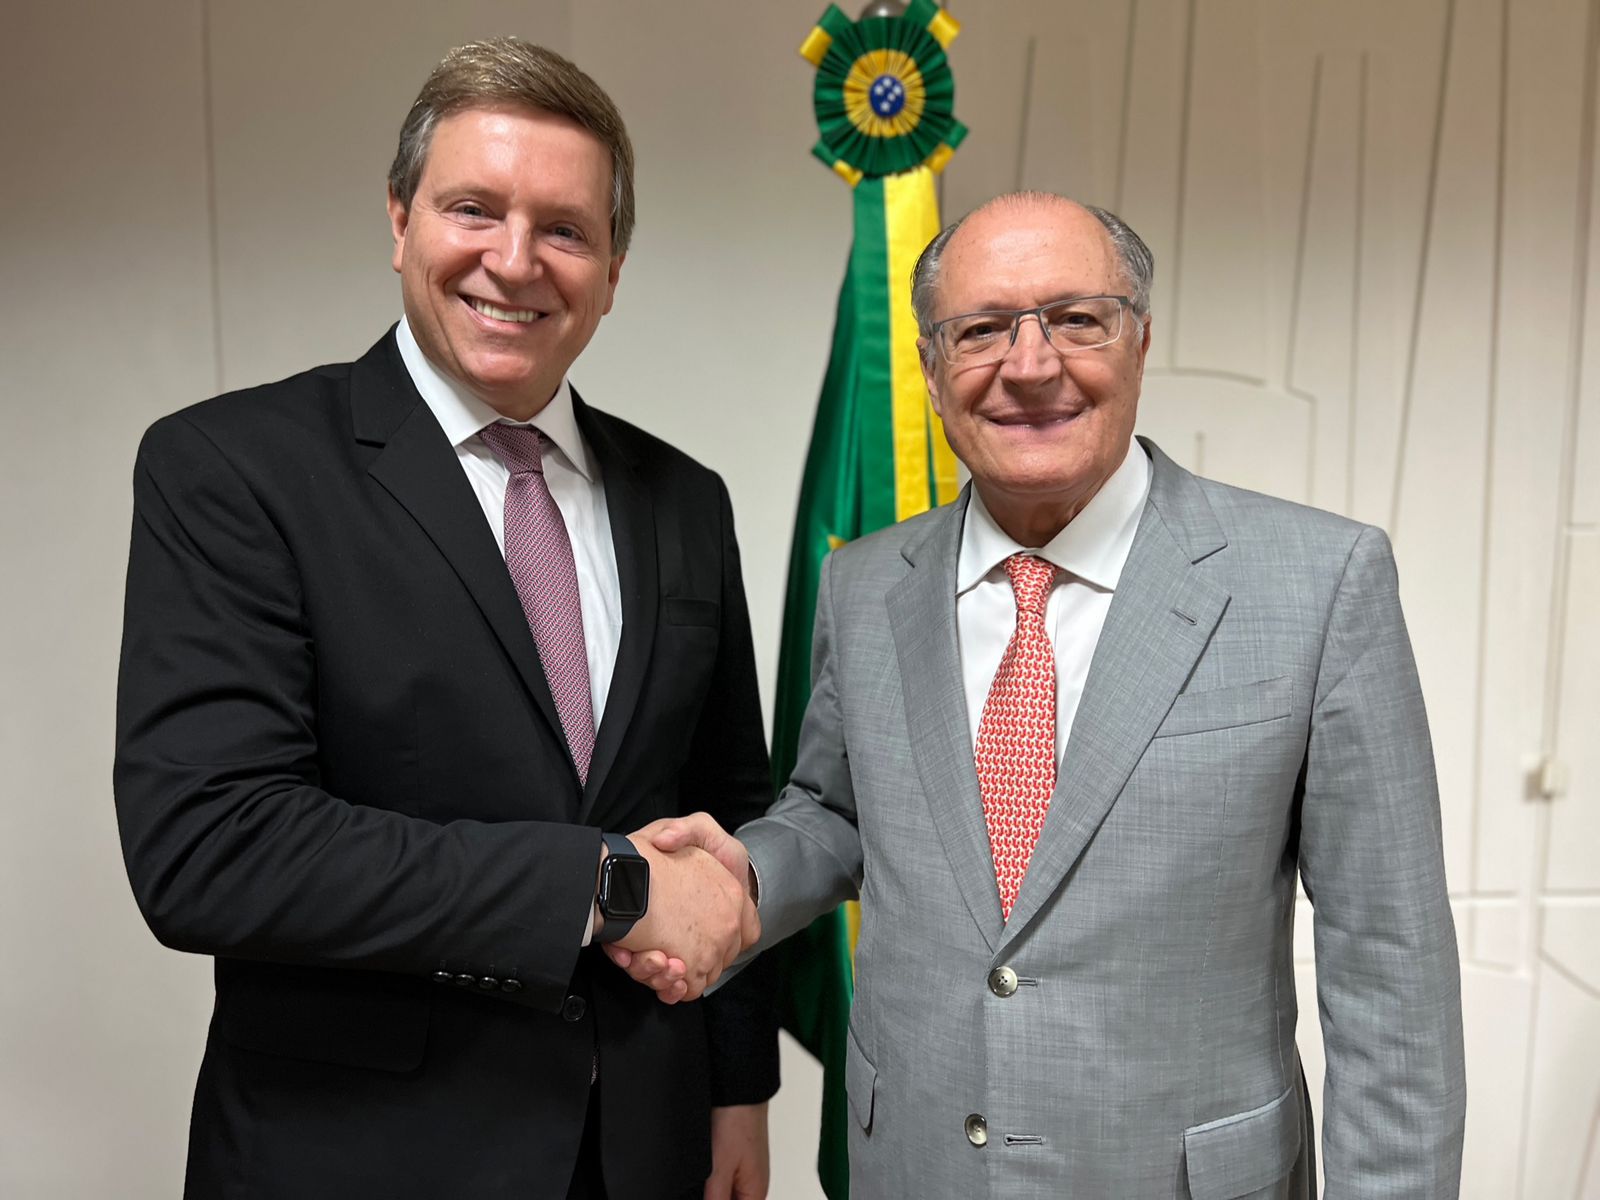 Prefeito de Itararé (SP), Heliton do Valle, reúne-se com presidente da República em exercício, Geraldo Alckmin